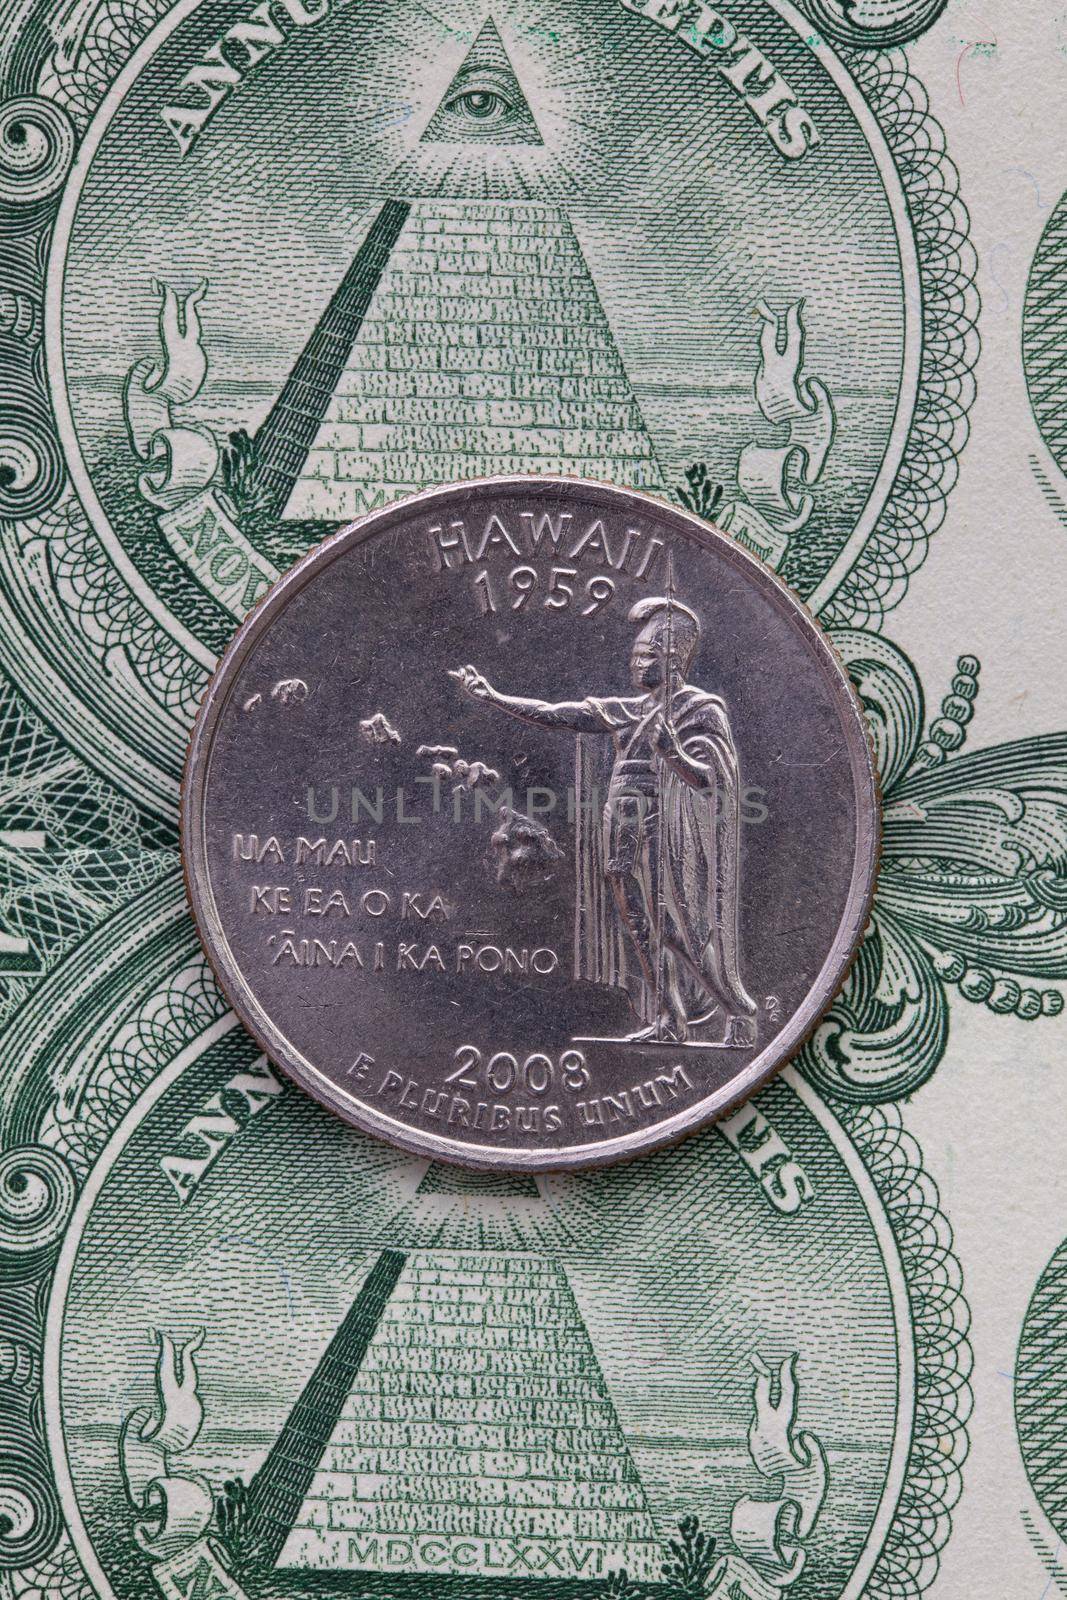 A quarter of Hawaii on US dollar bills. Symmetric composition of US dollar bills and a quarter of Hawaii